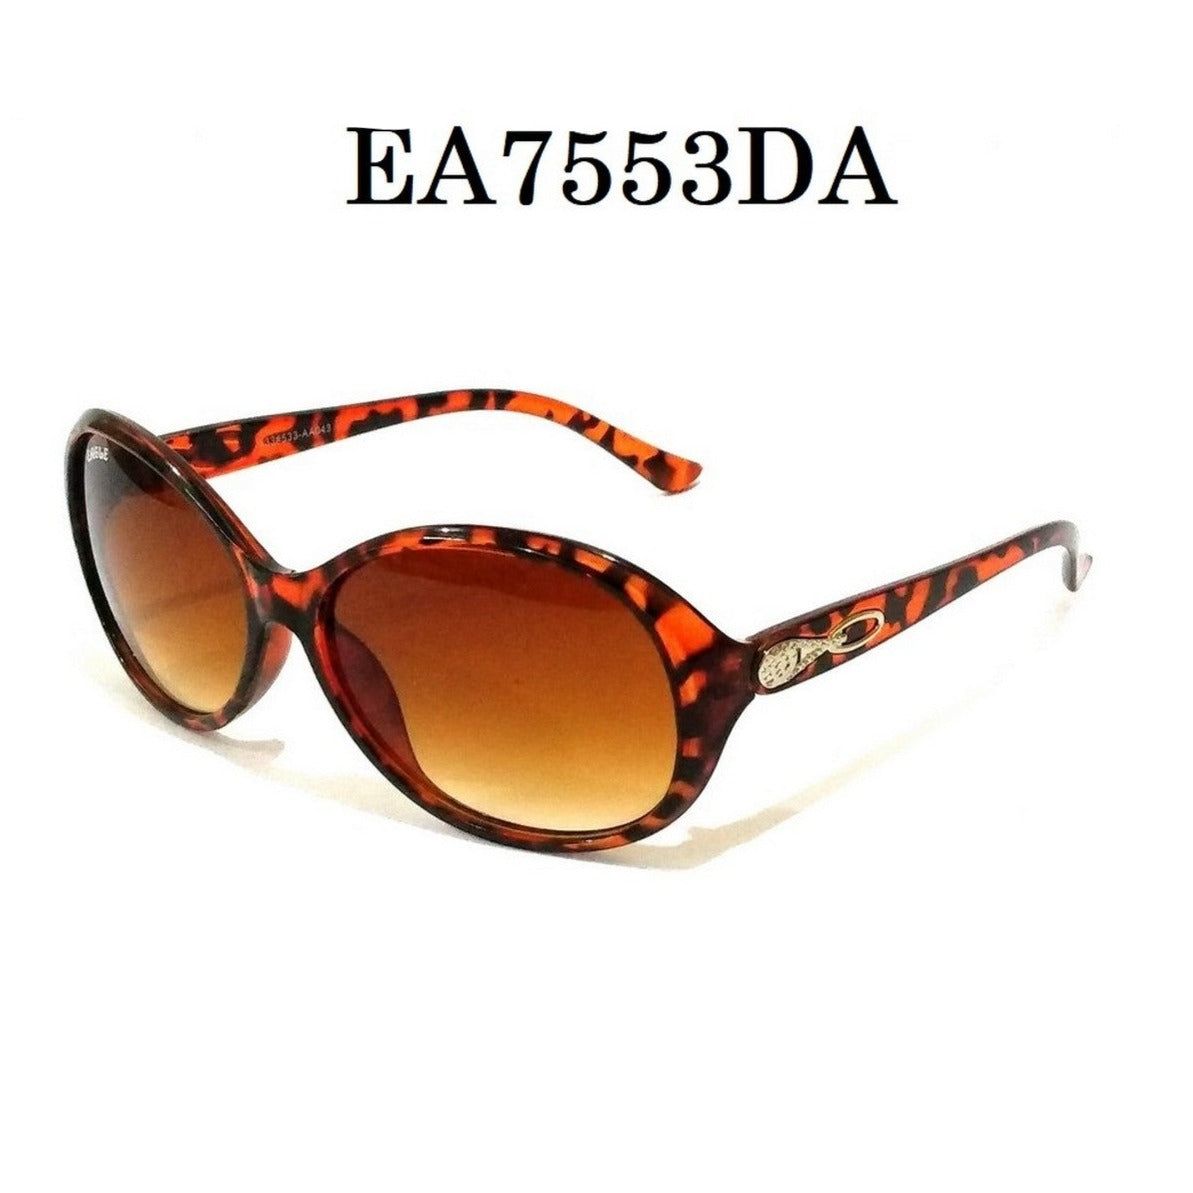 Leopard DA Color Sunglasses for Women EA7553DA